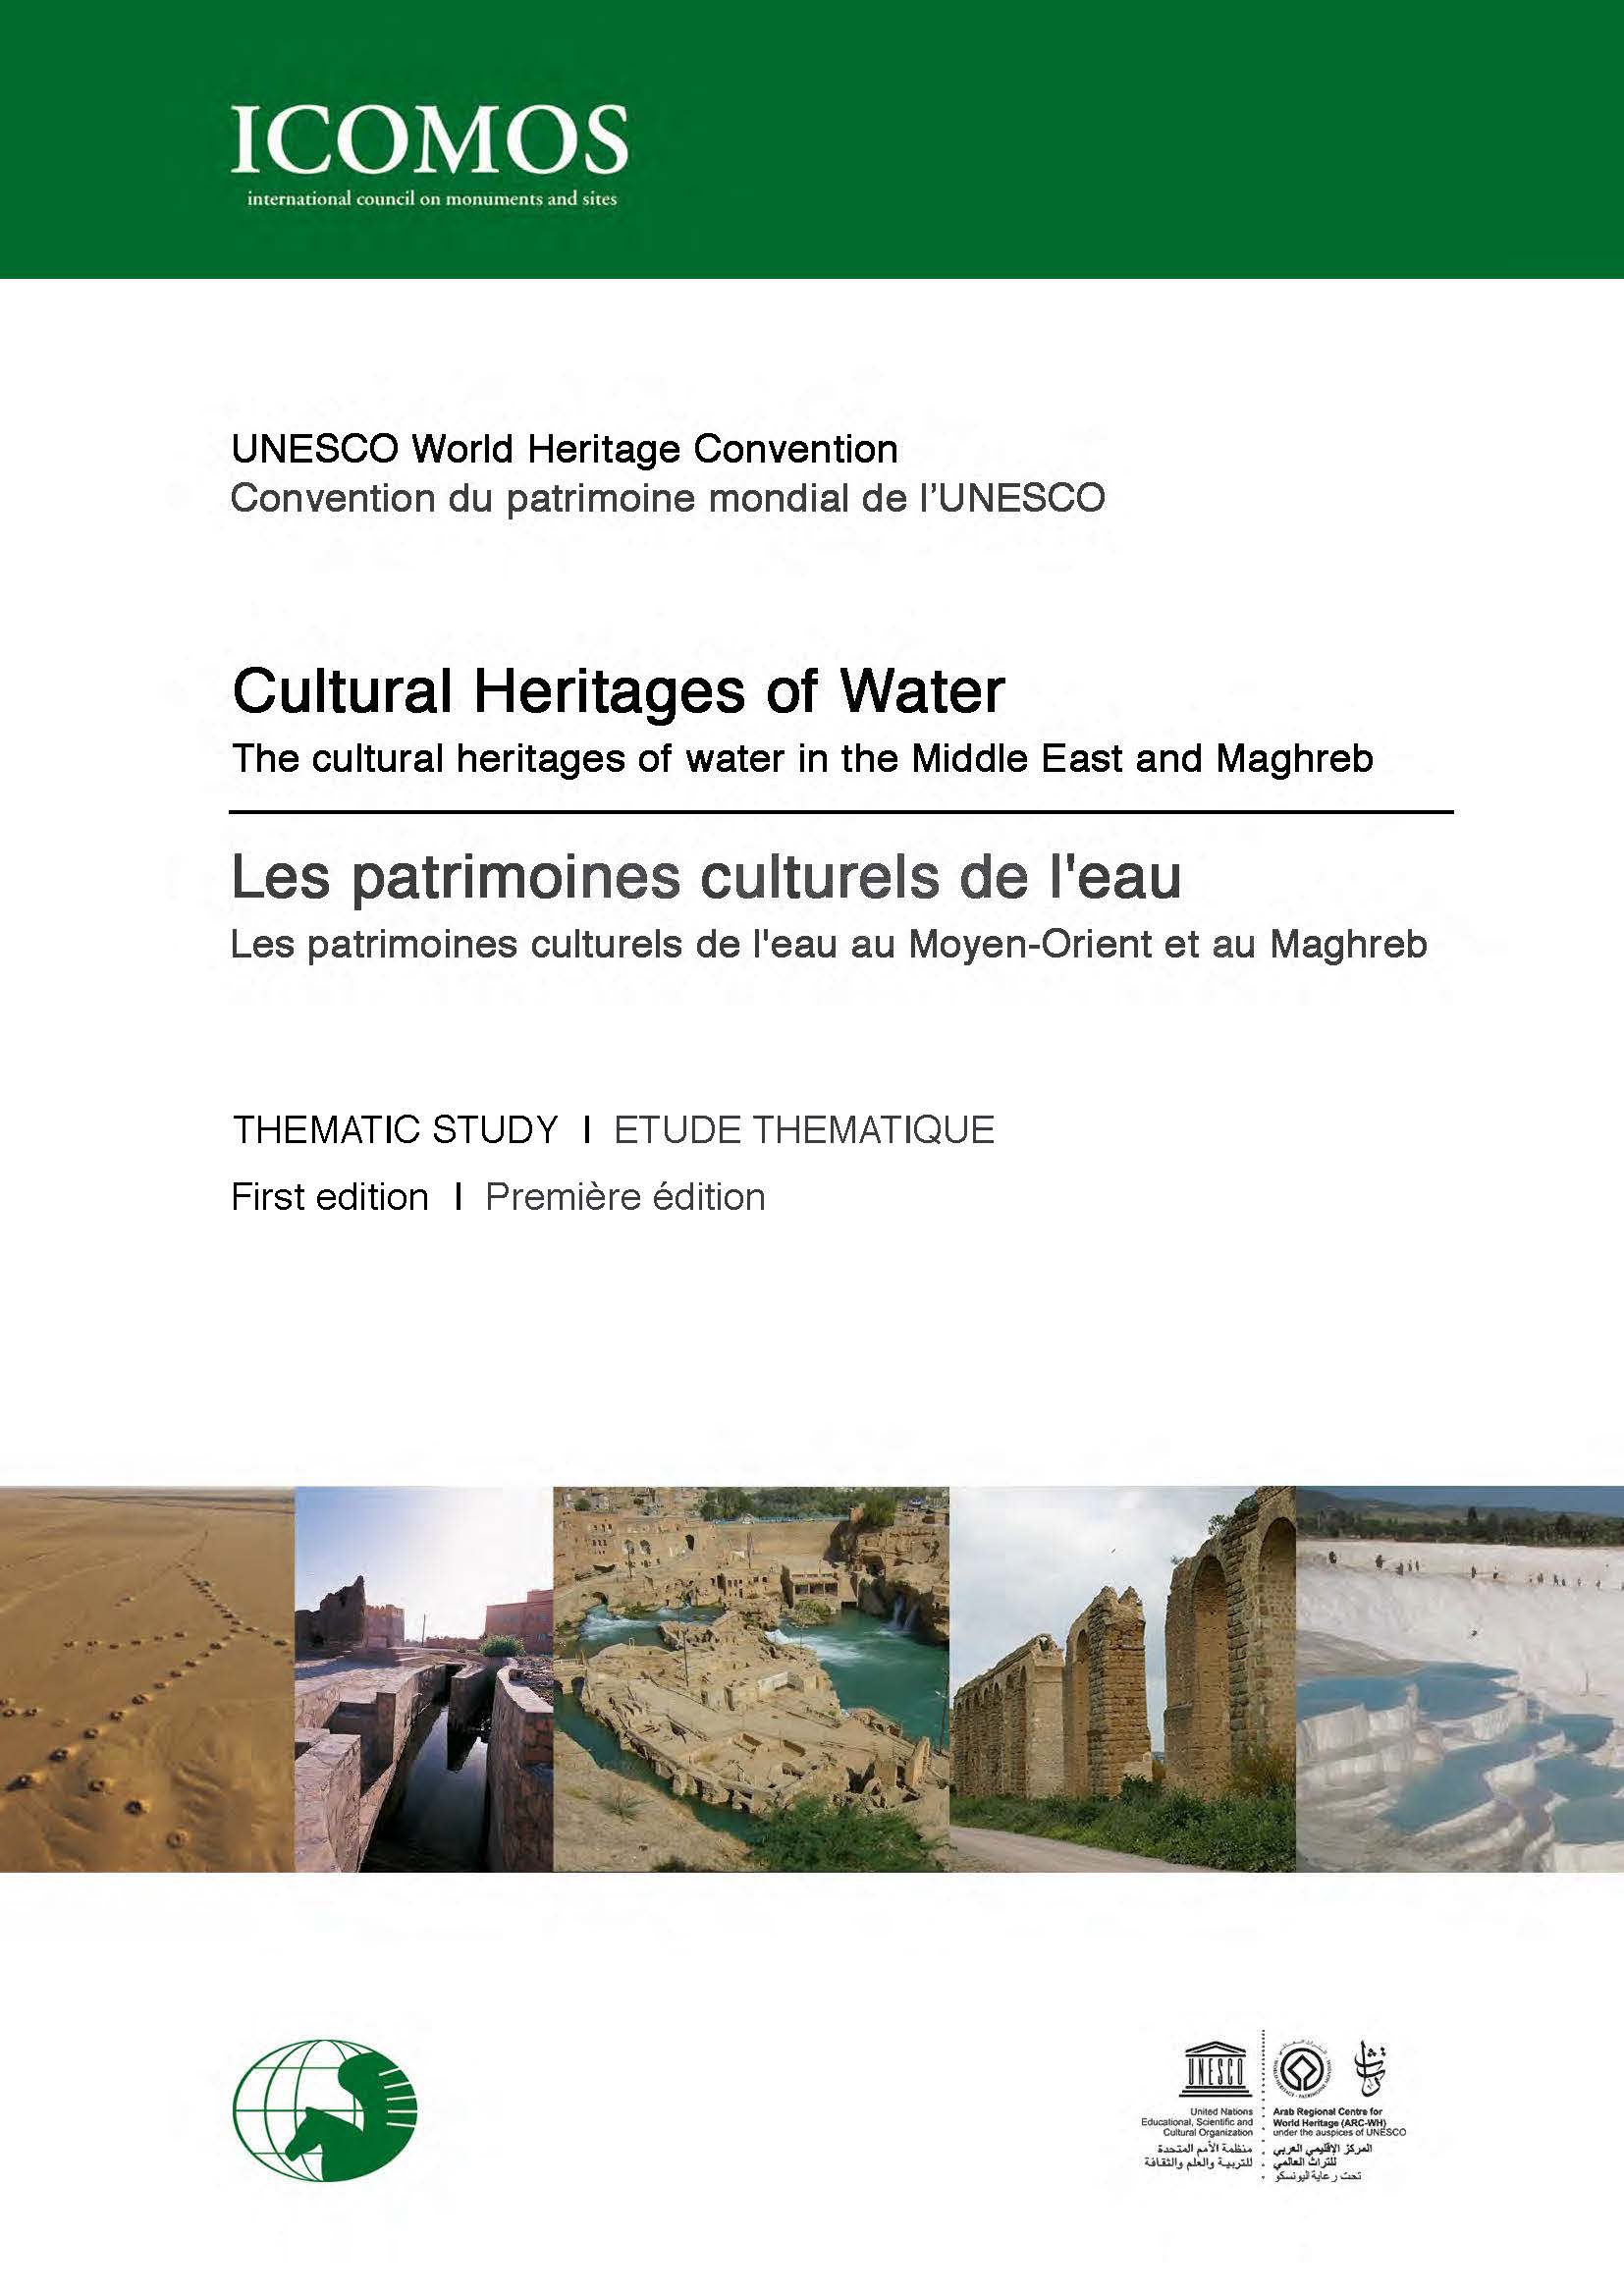 Etude thématique de l'ICOMOS sur les patrimoines de l'eau au Moyen orient et au Maghreb, copyright: ICOMOS  